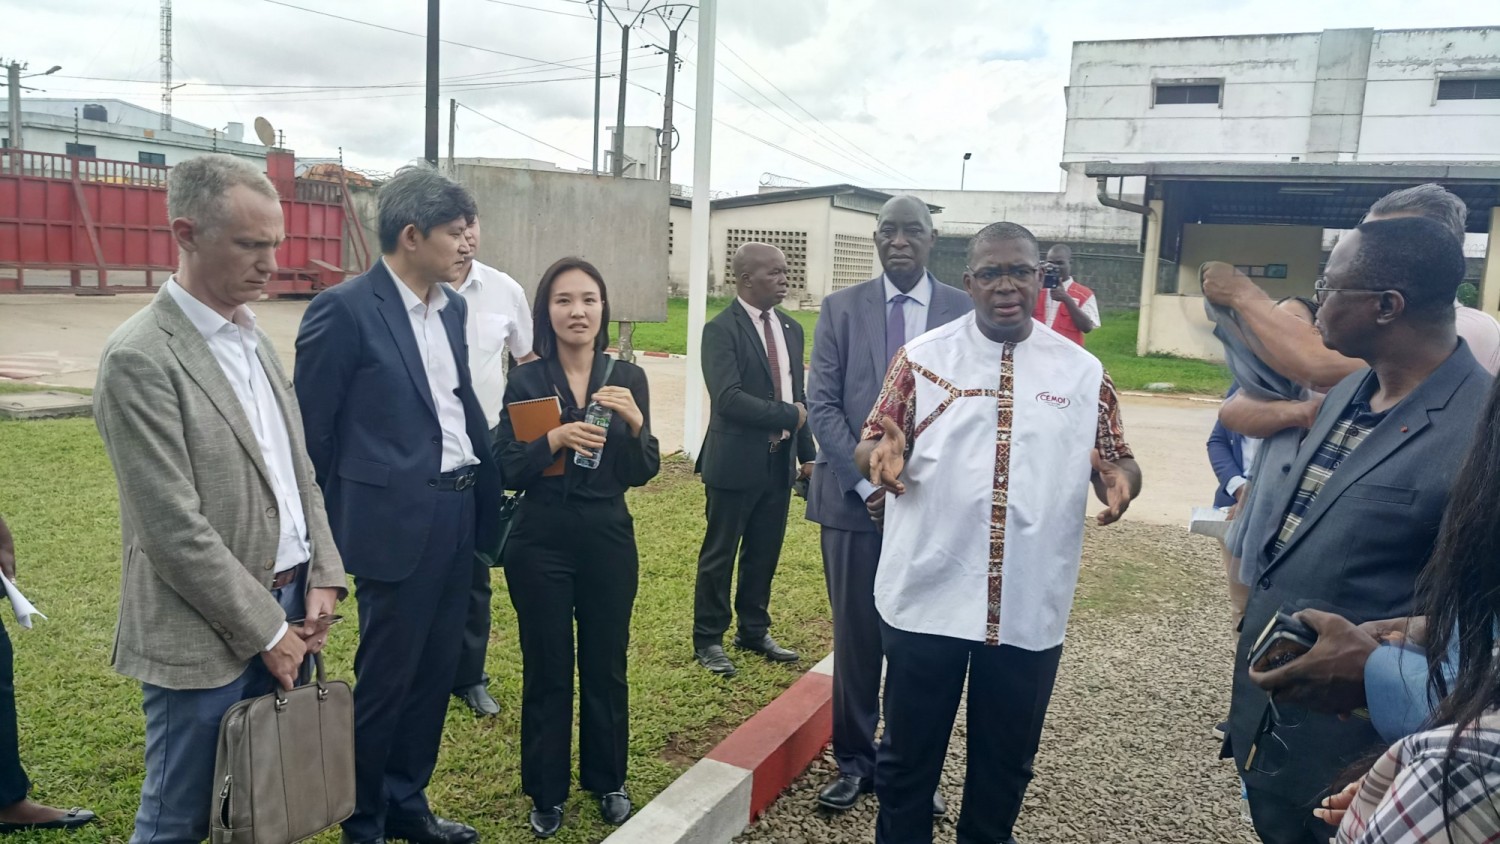 Côte d'Ivoire :   Éco diplomatie, des Chefs de missions et des membres du corps diplomatique visitent une usine de transformation de cacao et invités à investir dans le pays